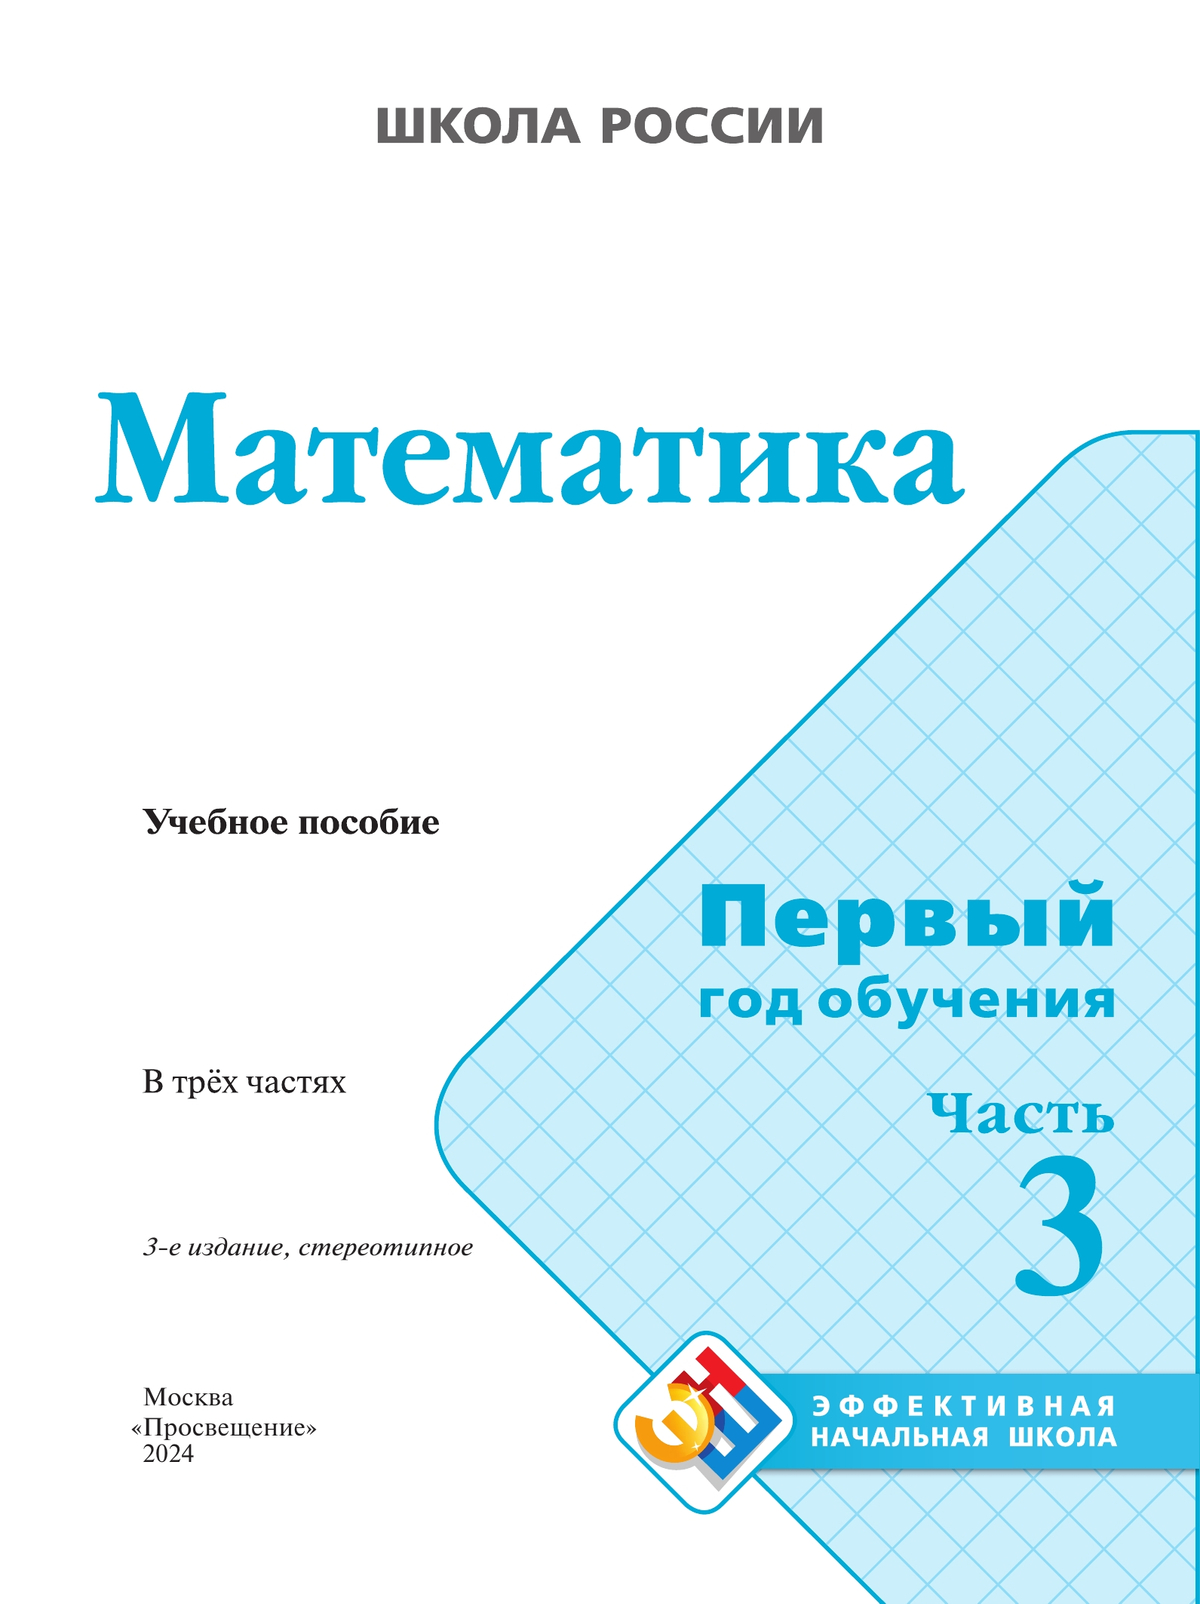 Главная — Математика в начальной школе — витамин-п-байкальский.рф